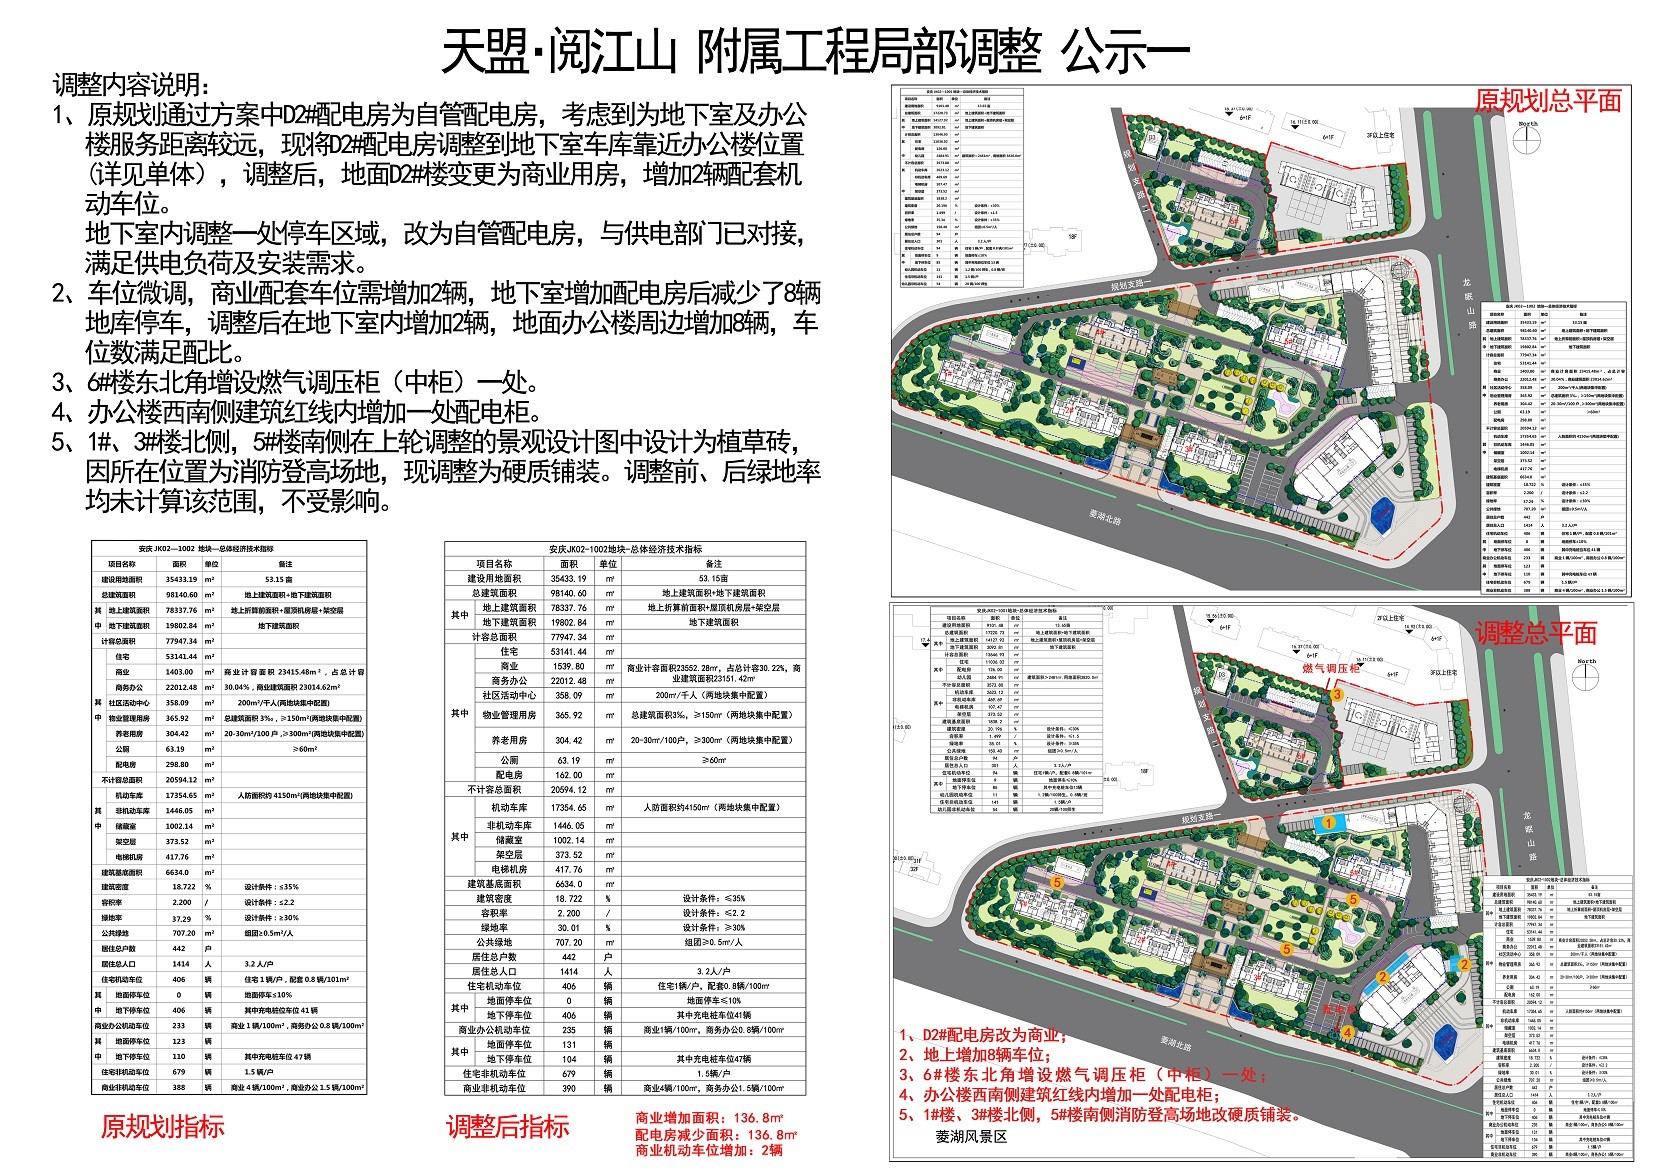 安庆市天盟·阅江山项目规划建筑方案调整公示通告